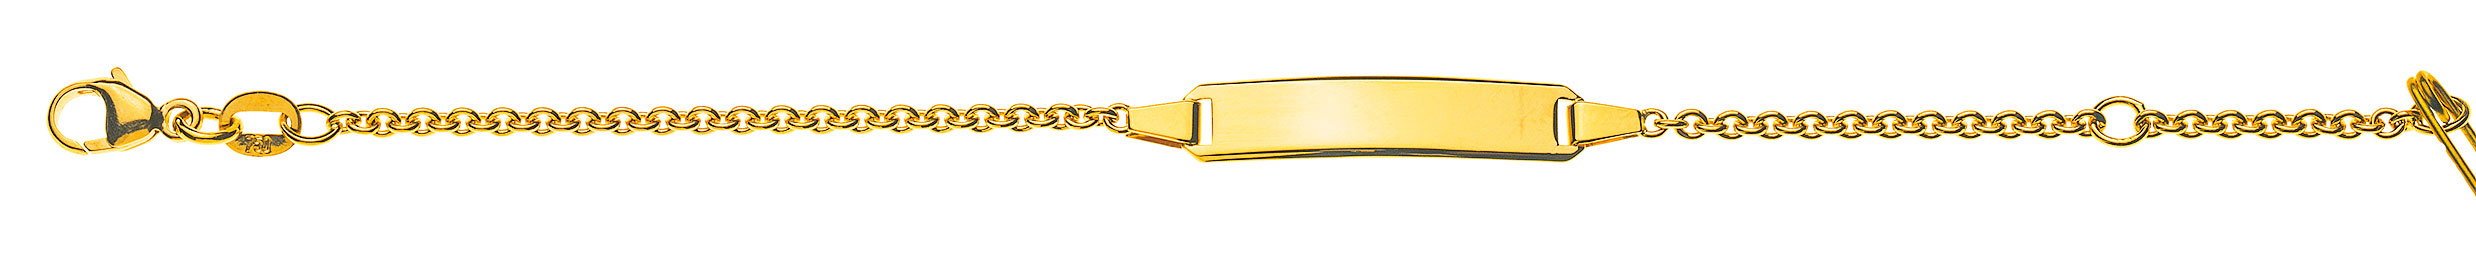 AURONOS Prestige ID-Bracelet en or jaune 18k Chaîne d'ancre ronde 14cm